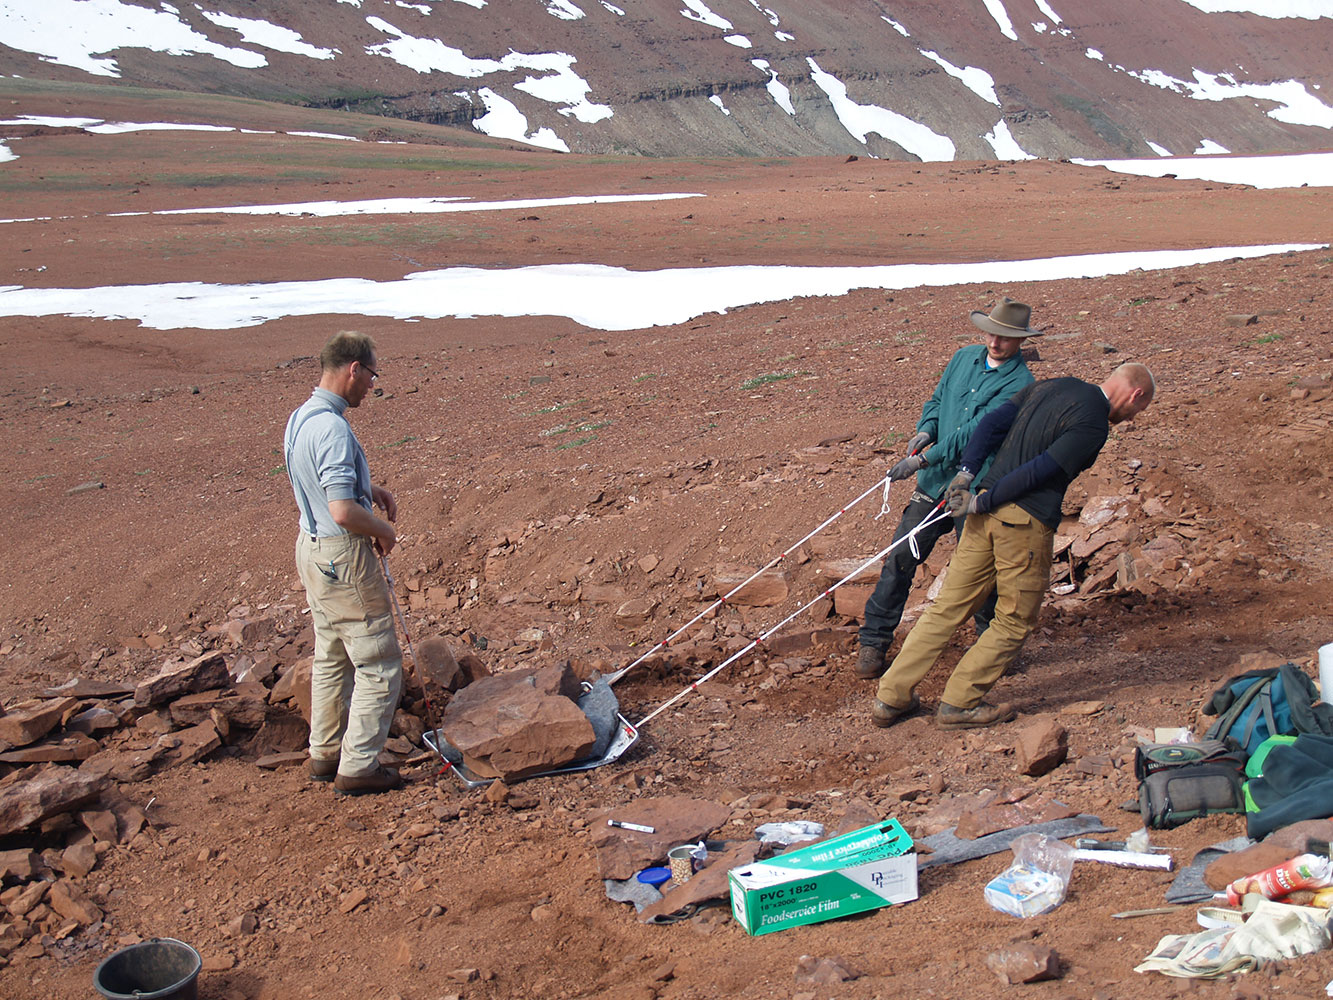 Fotografi fra en udgravningsekspedition på Grønland